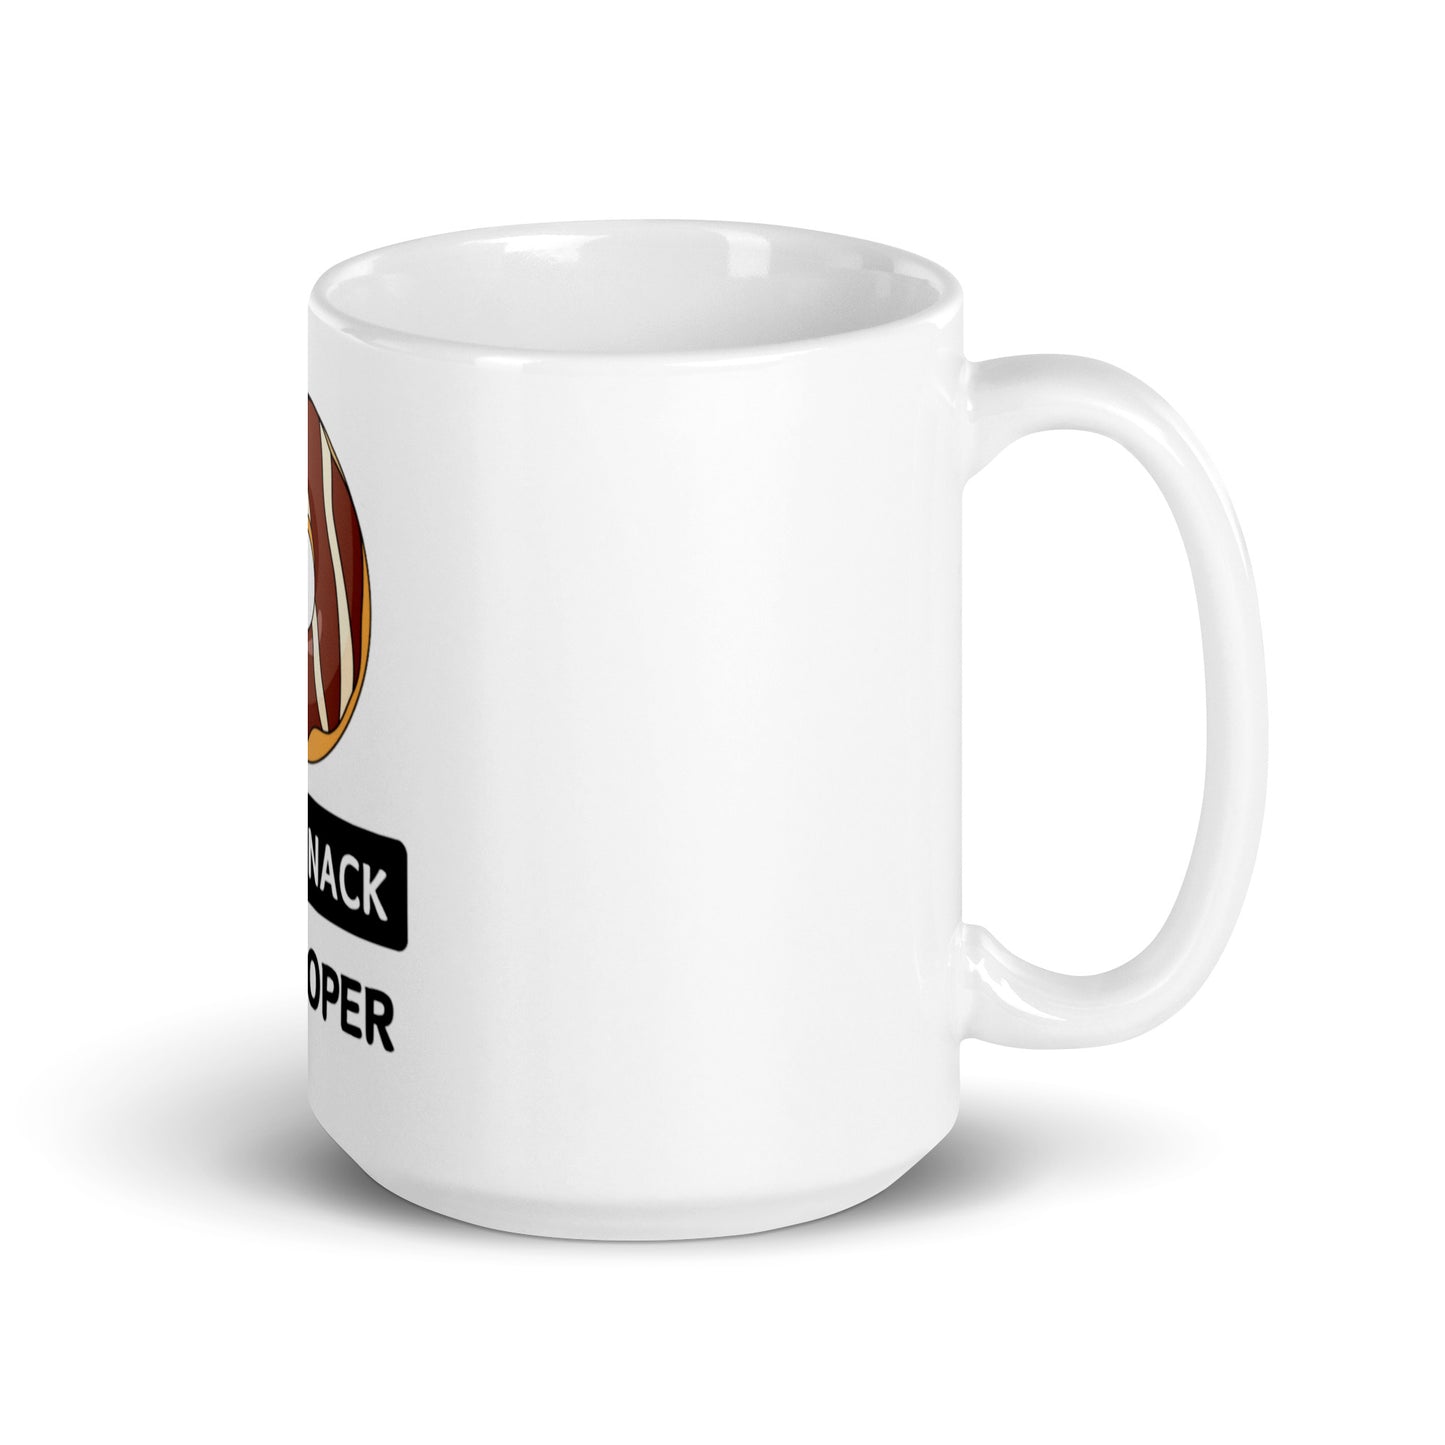 Full Snack Developer mug